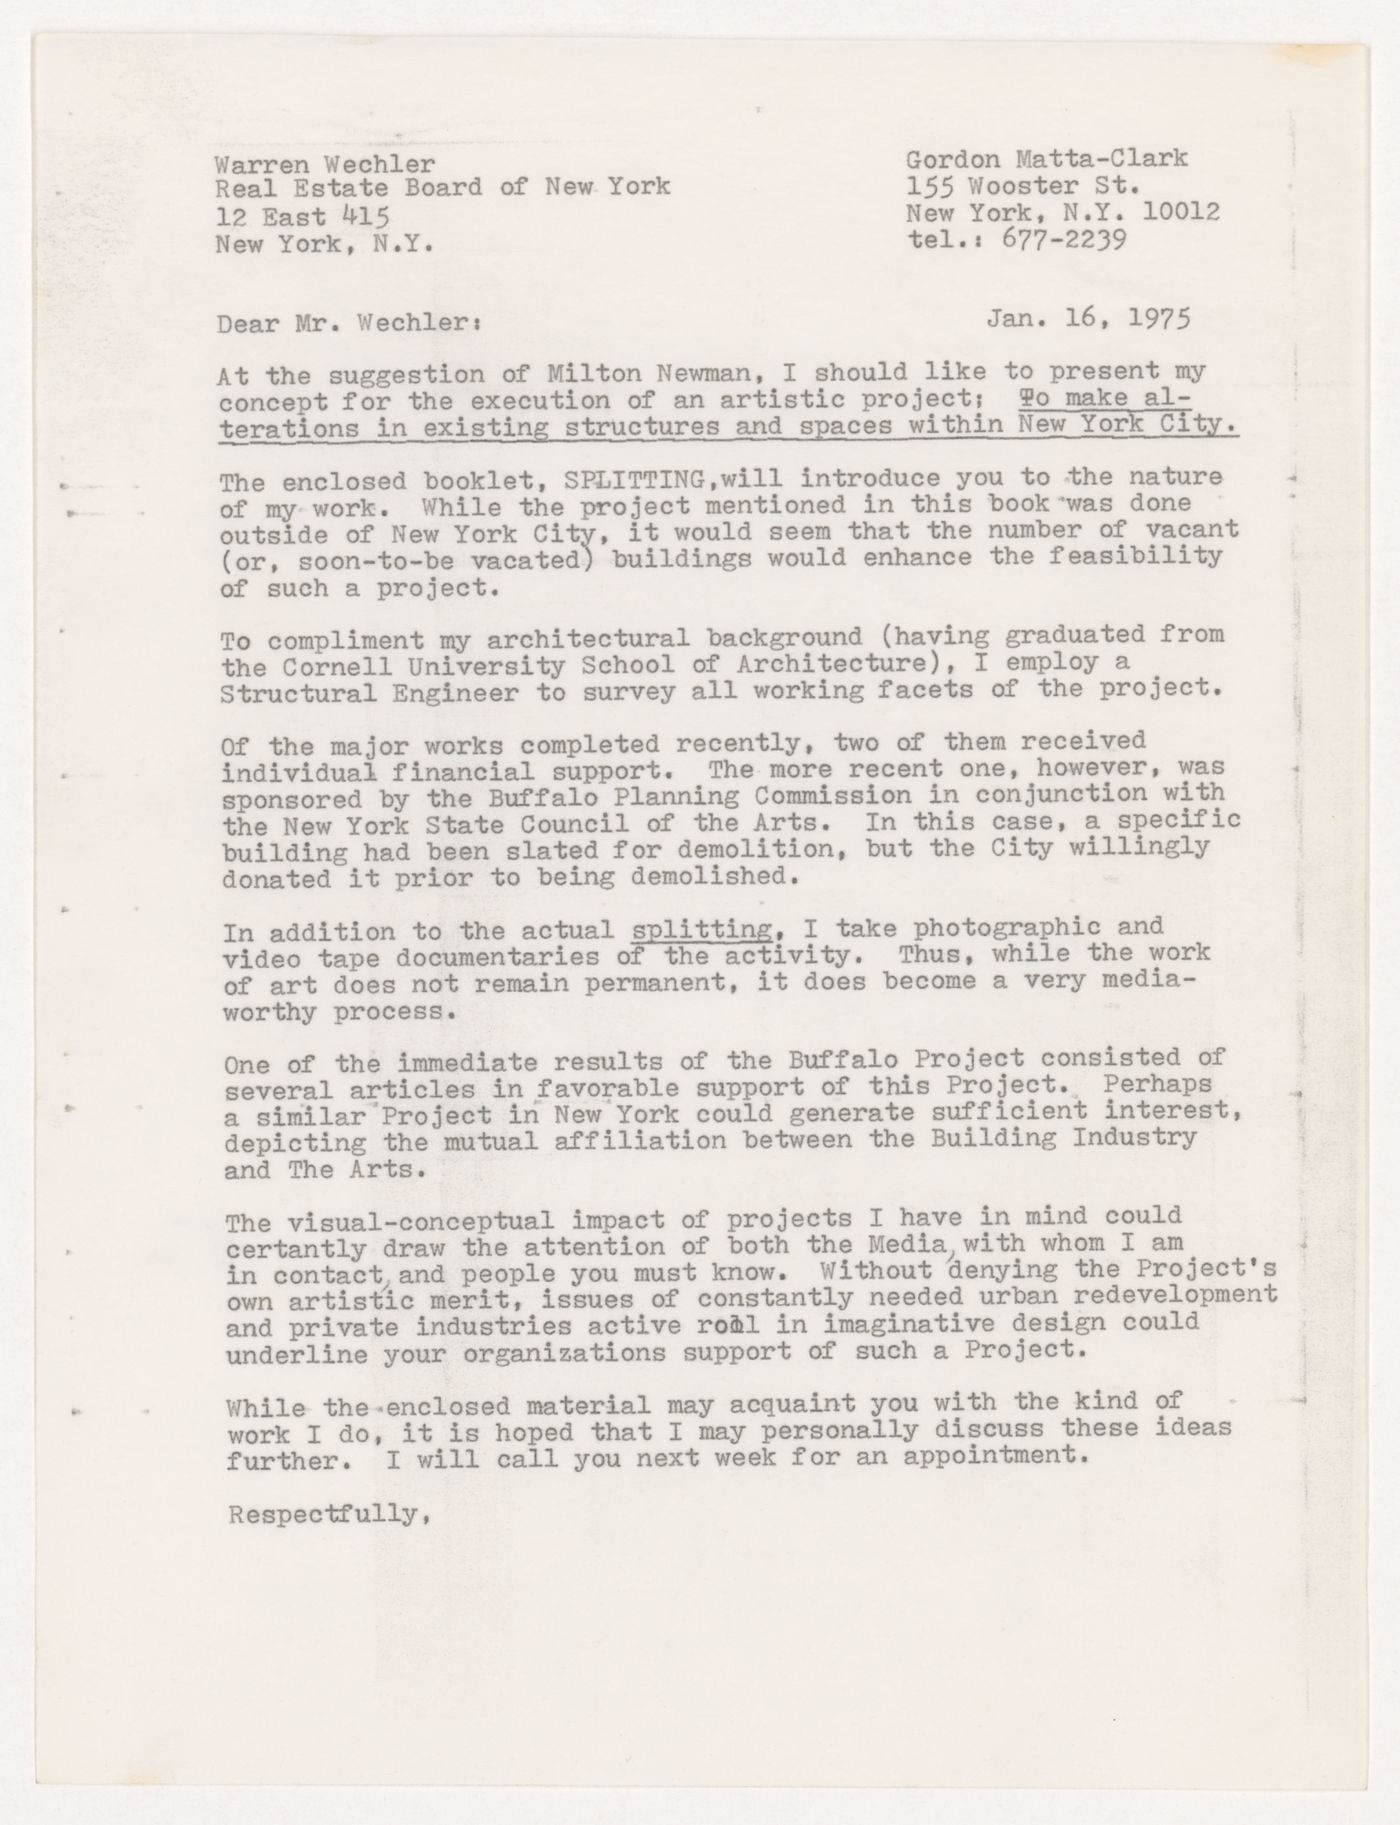 Letter from Gordon Matta-Clark to Warren Wechler